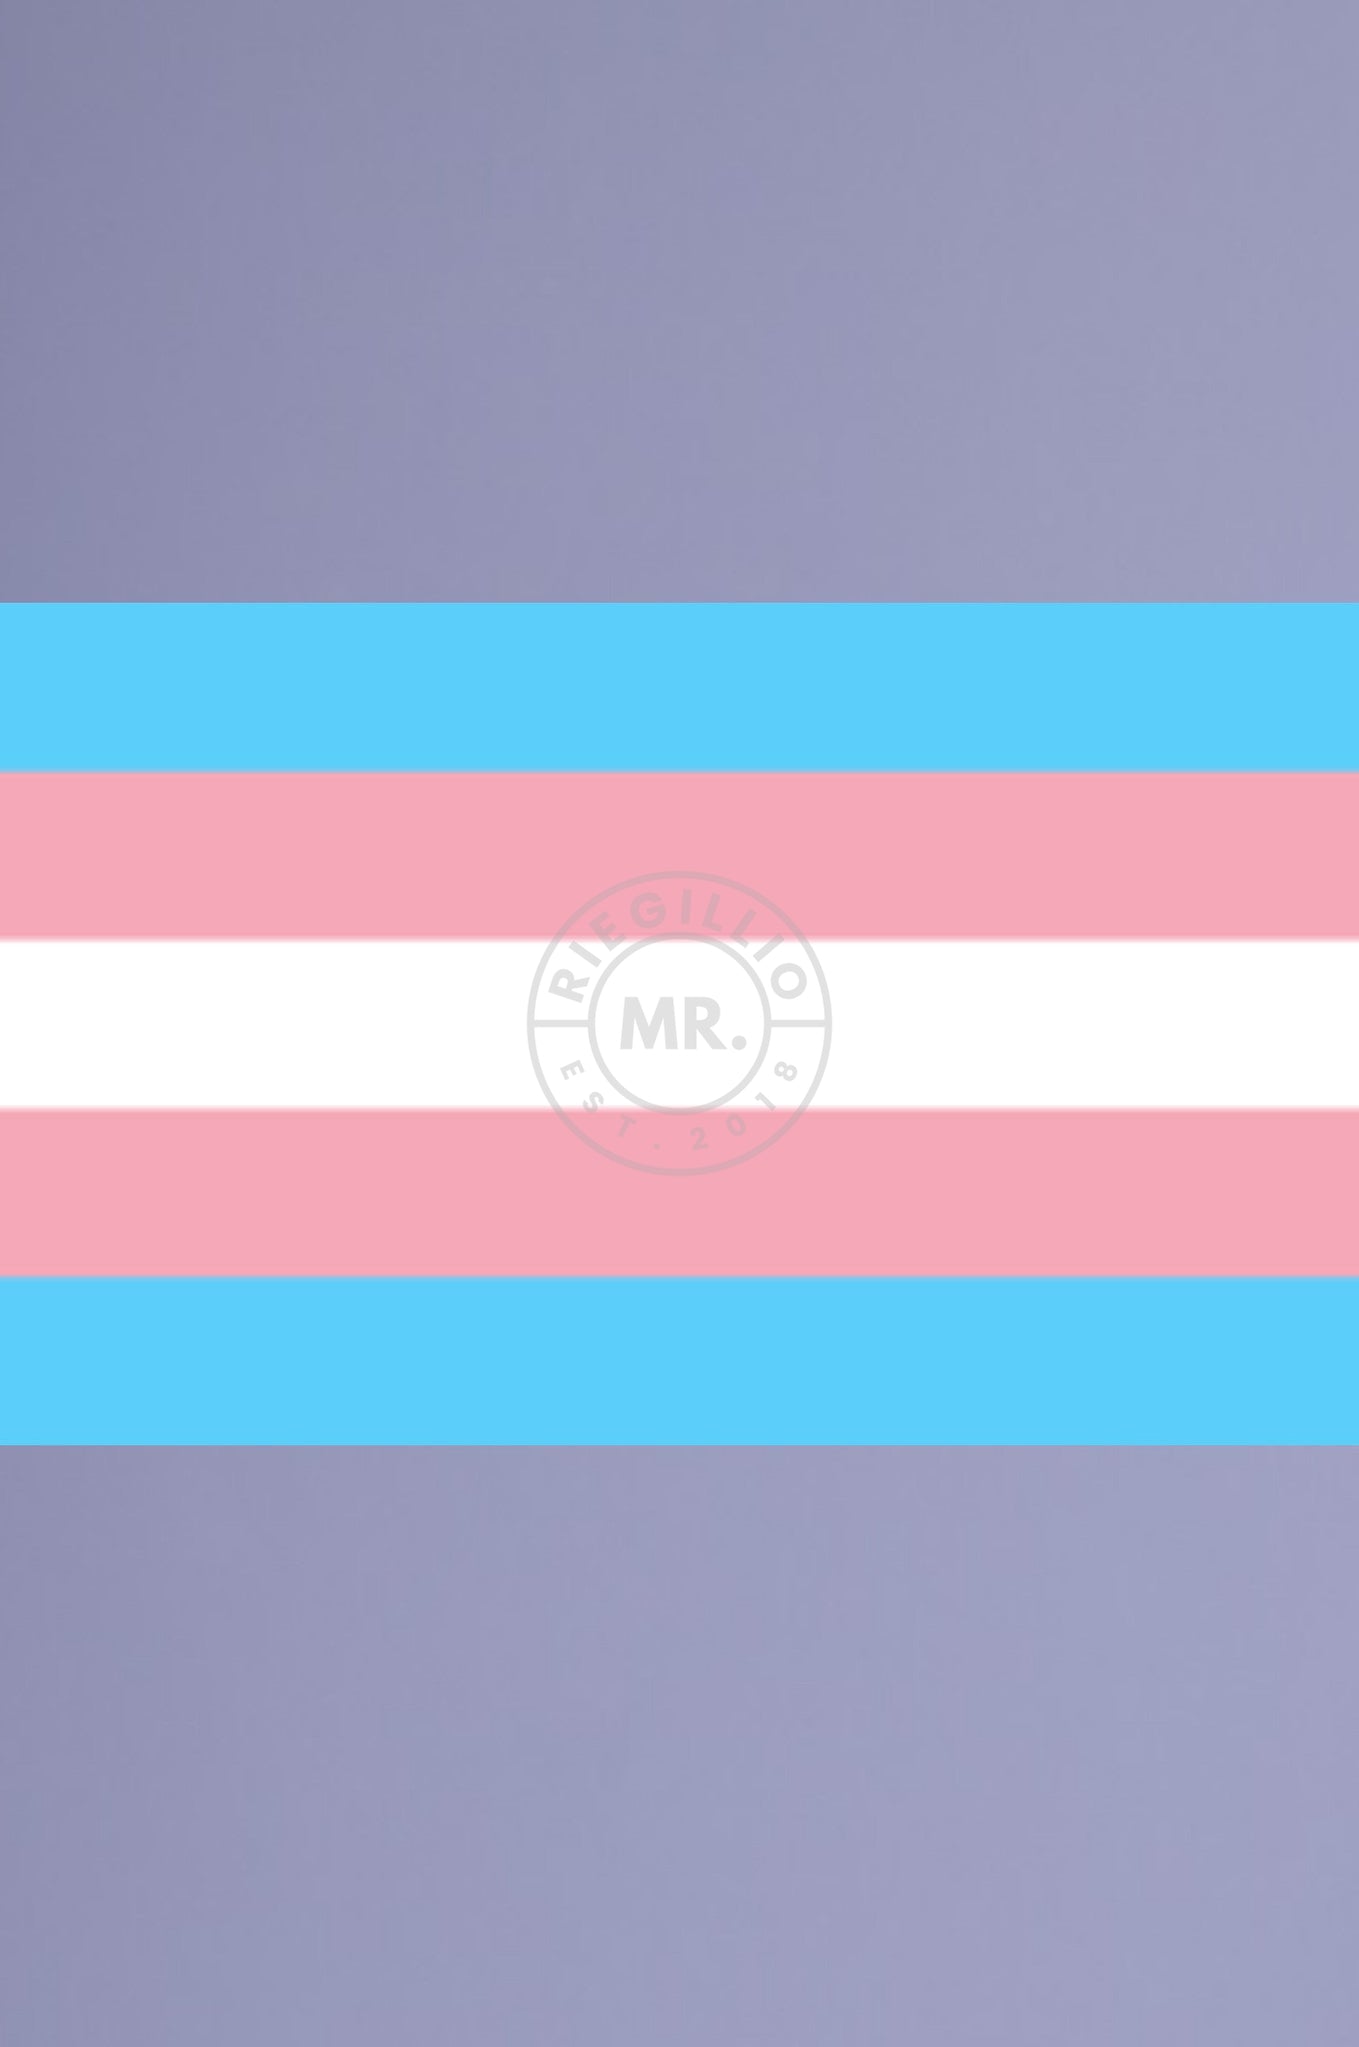 Transgender Pride Flag 90 x 150 cm at MR. Riegillio